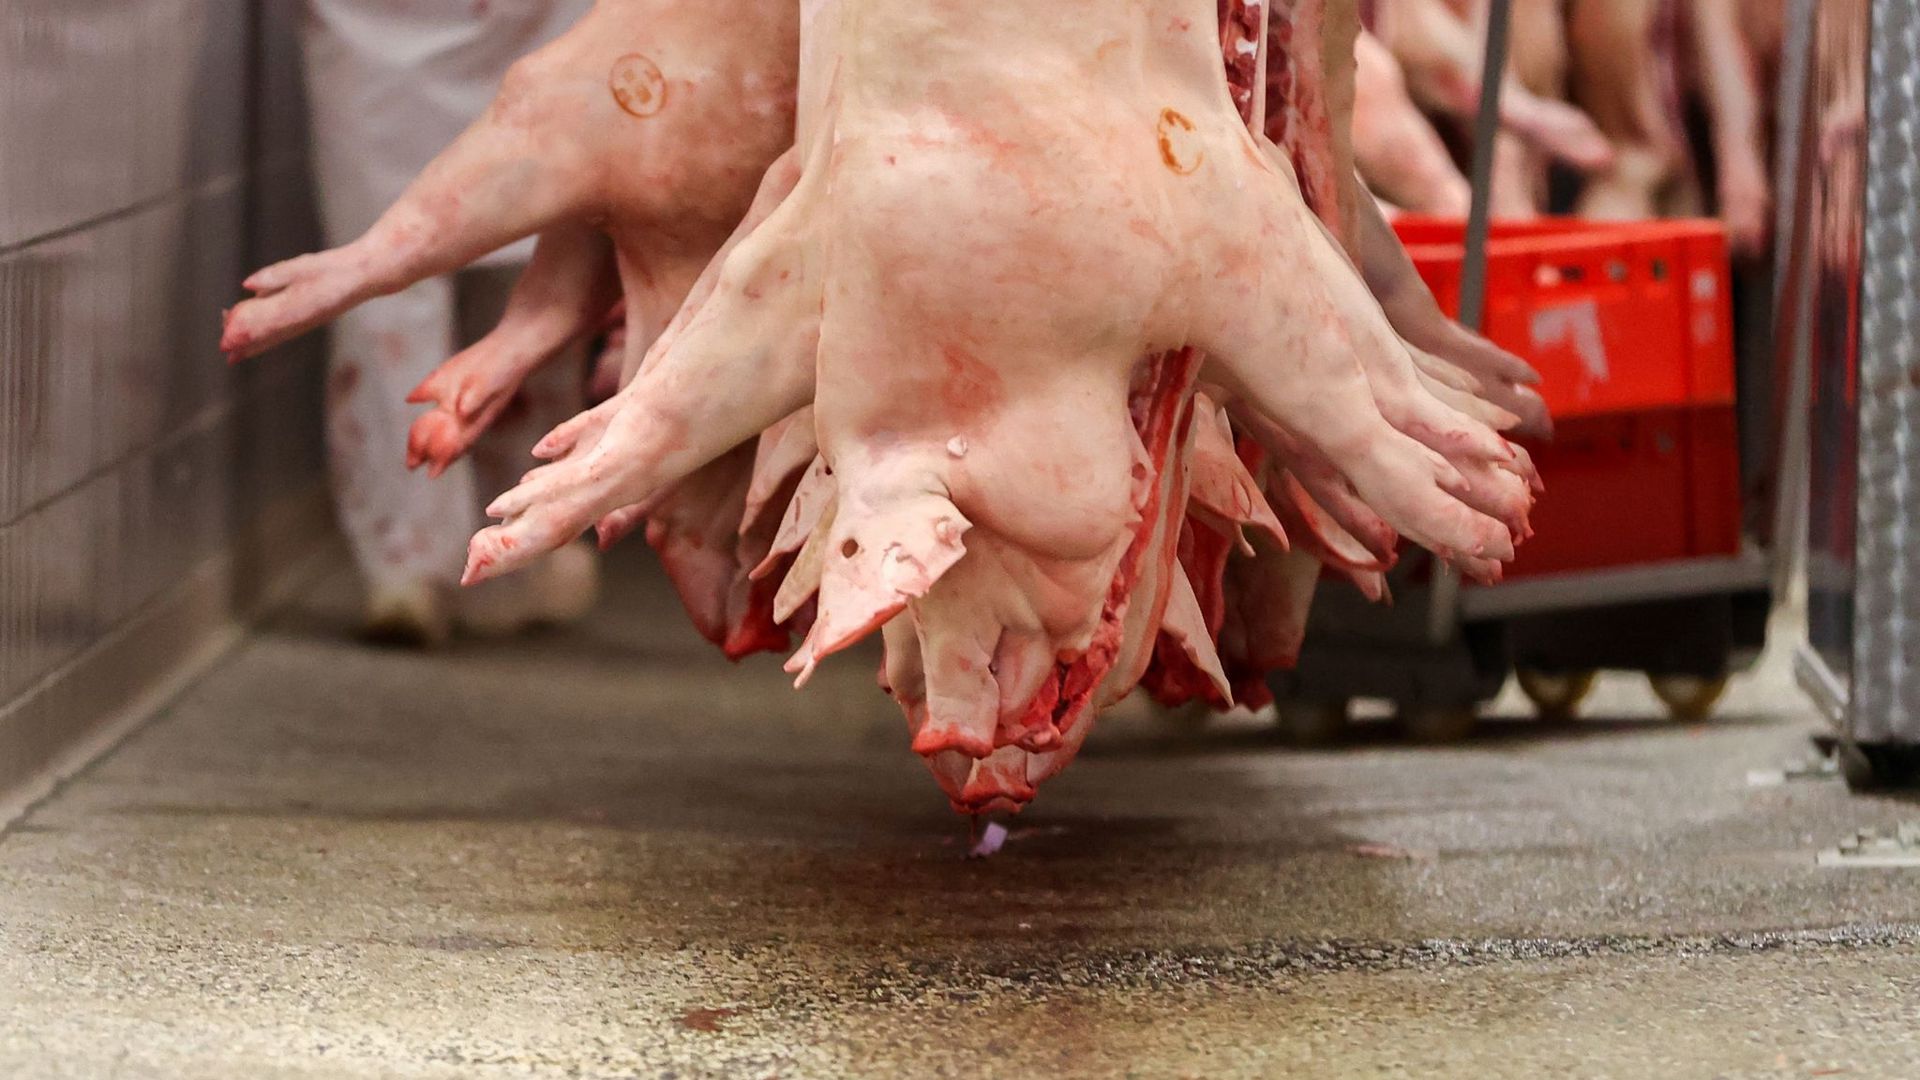 Schweinehälften hängen in einem Schlachtbetrieb.